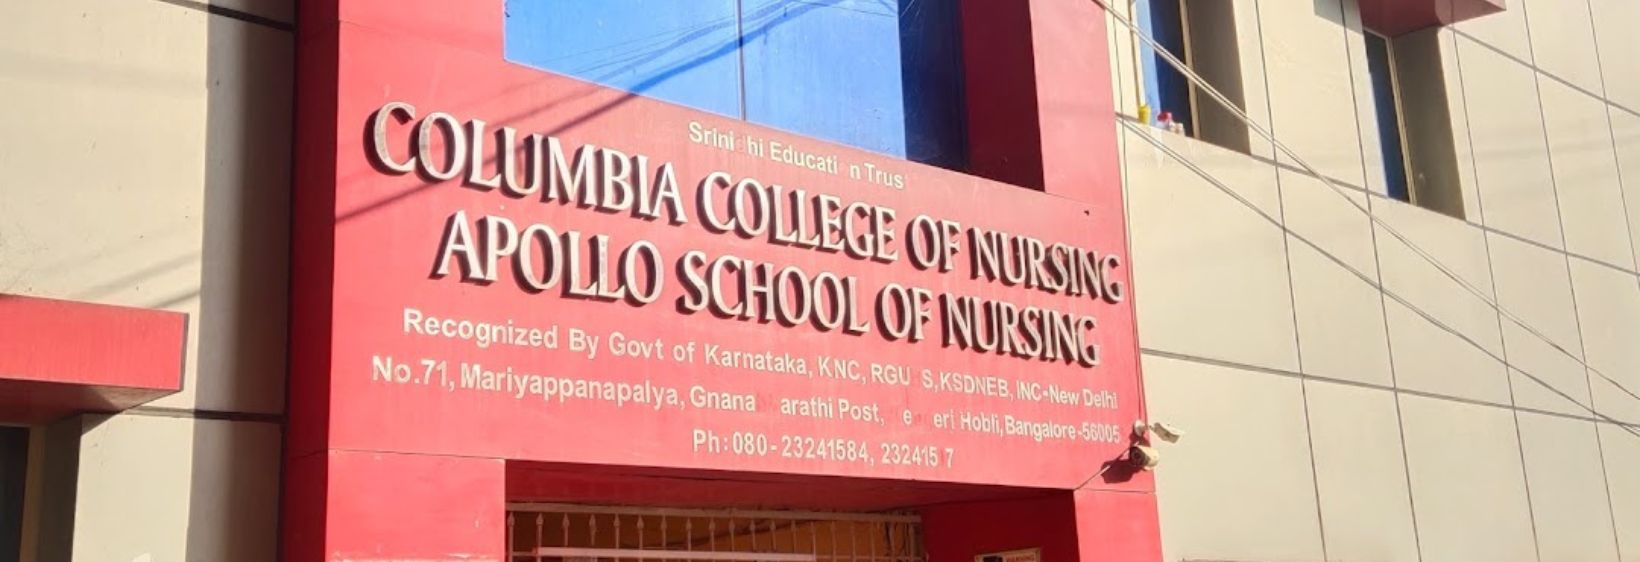 Columbia College of Nursing - Bangalore